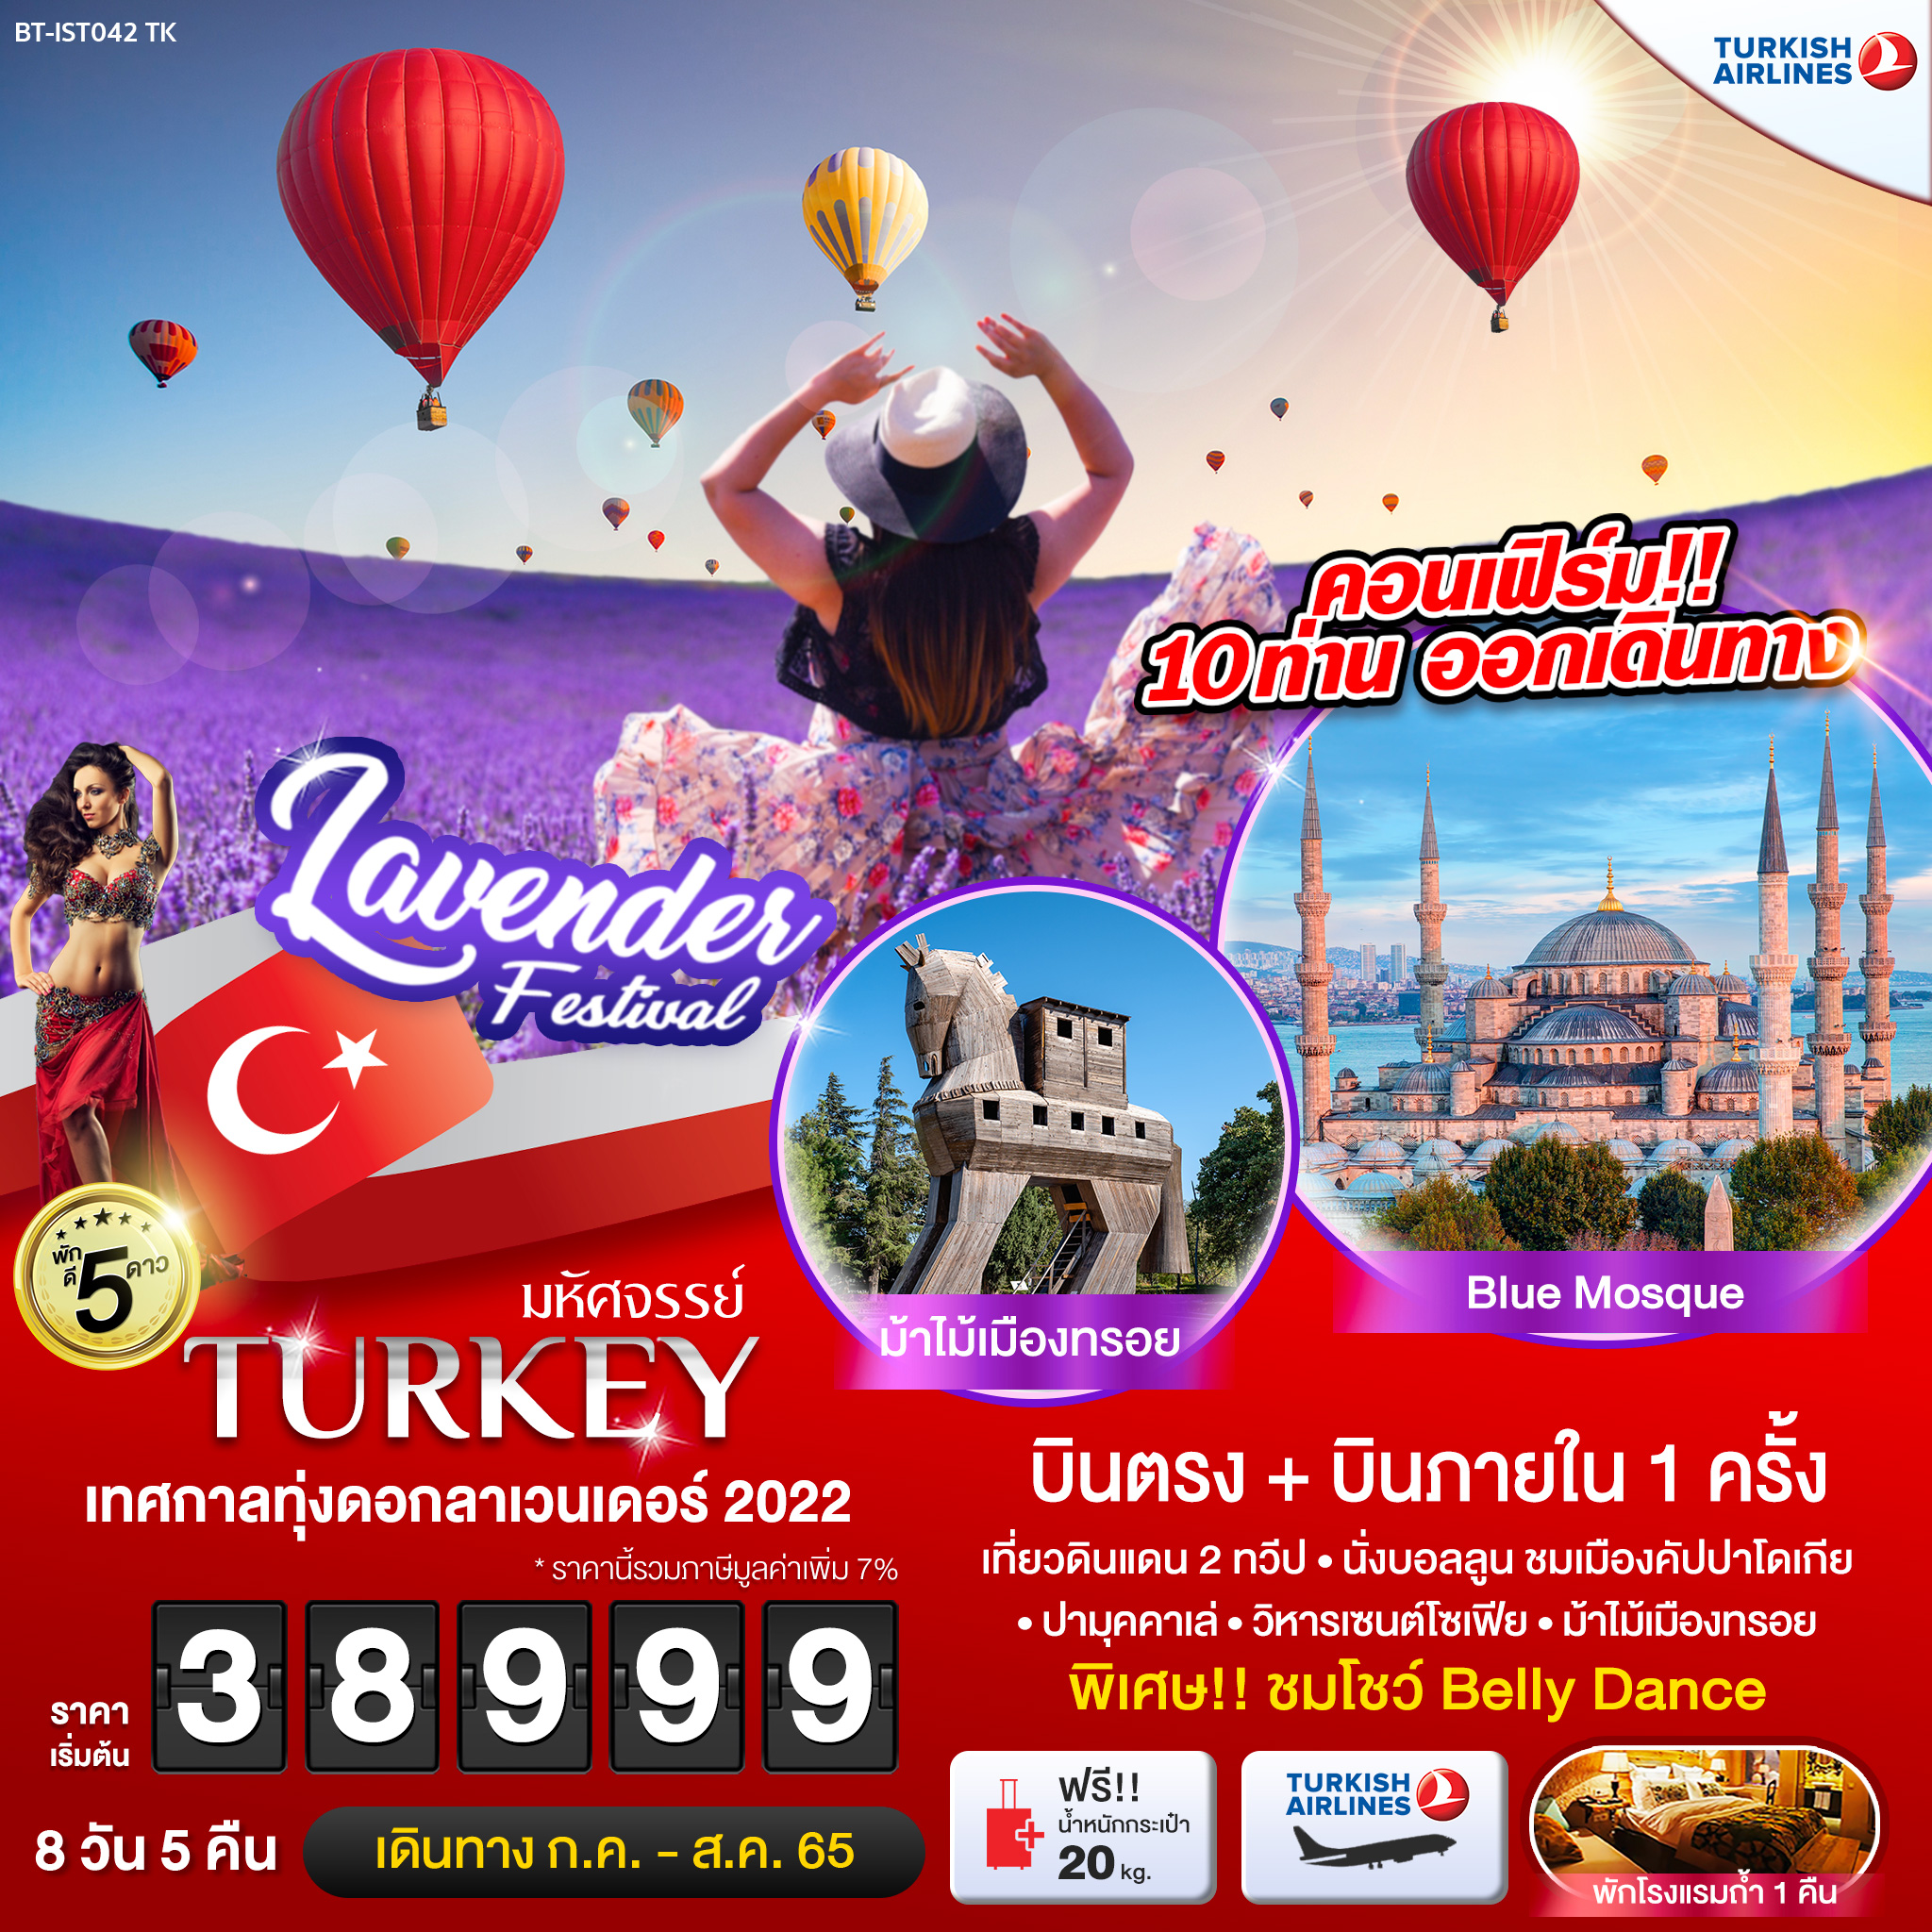 ทัวร์ตุรกี  : มหัศจรรย์ TURKEY เทศกาลทุ่งดอกลาเวนเดอร์ 2022